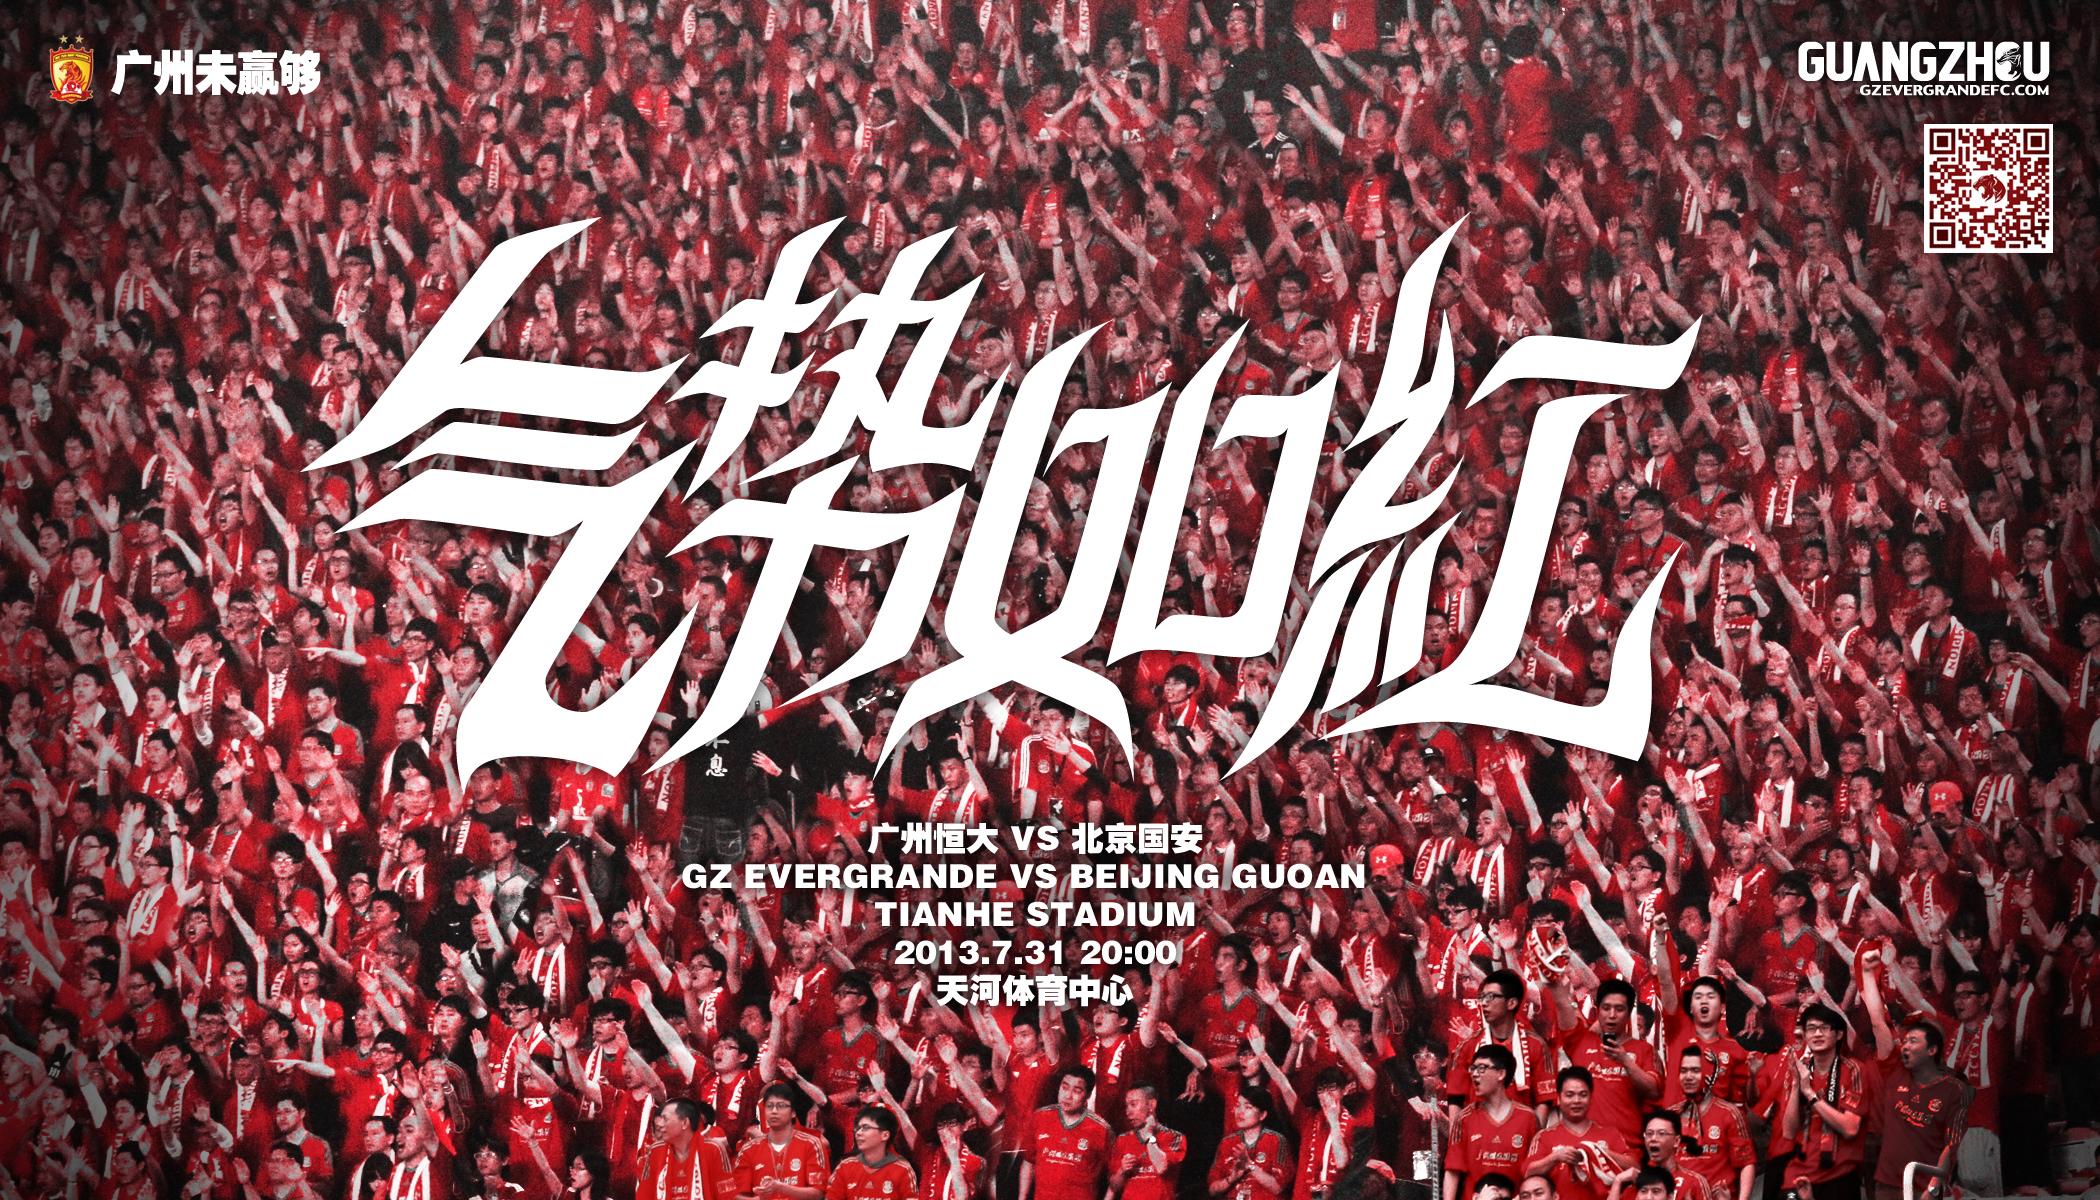 如何评价广州恒大足球俱乐部官方设计的一系列海报